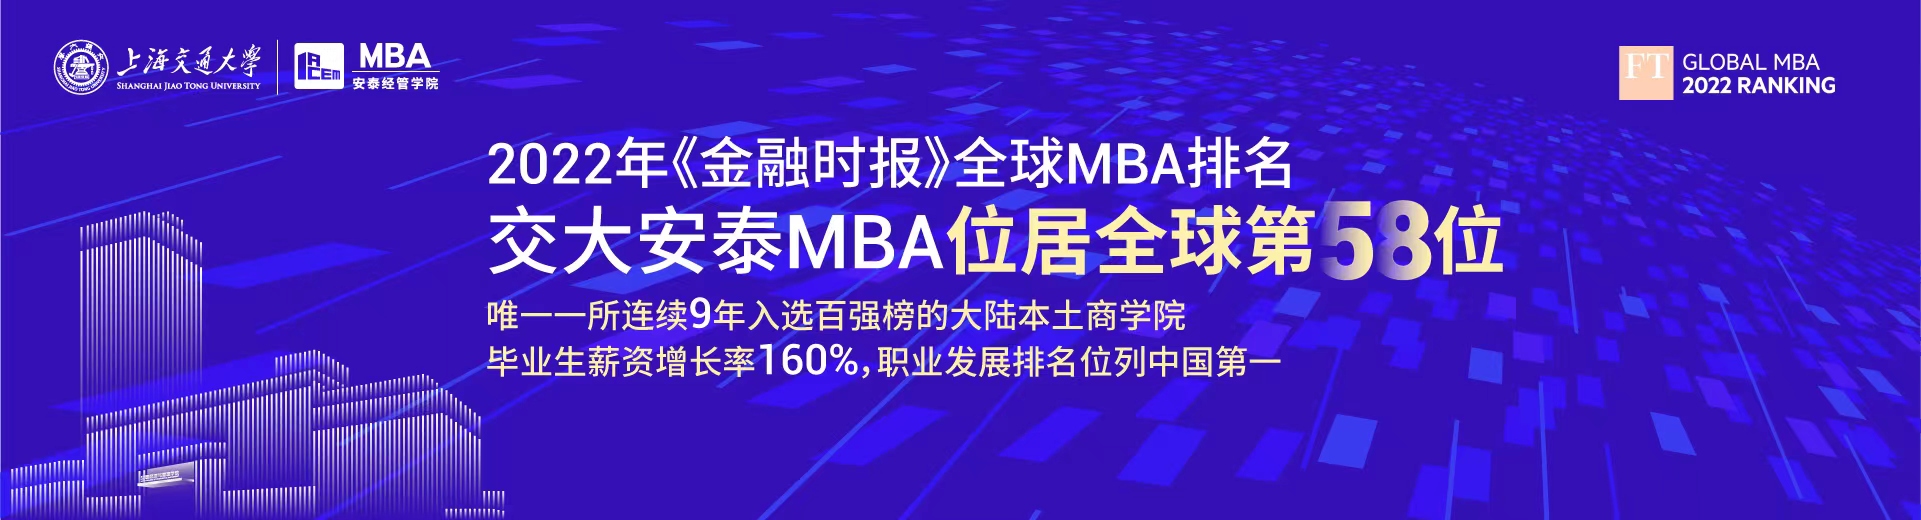 2022年《金融时报》全球MBA排名揭晓，交大安泰MBA位居全球第58位，职业发展排名问鼎全国第一